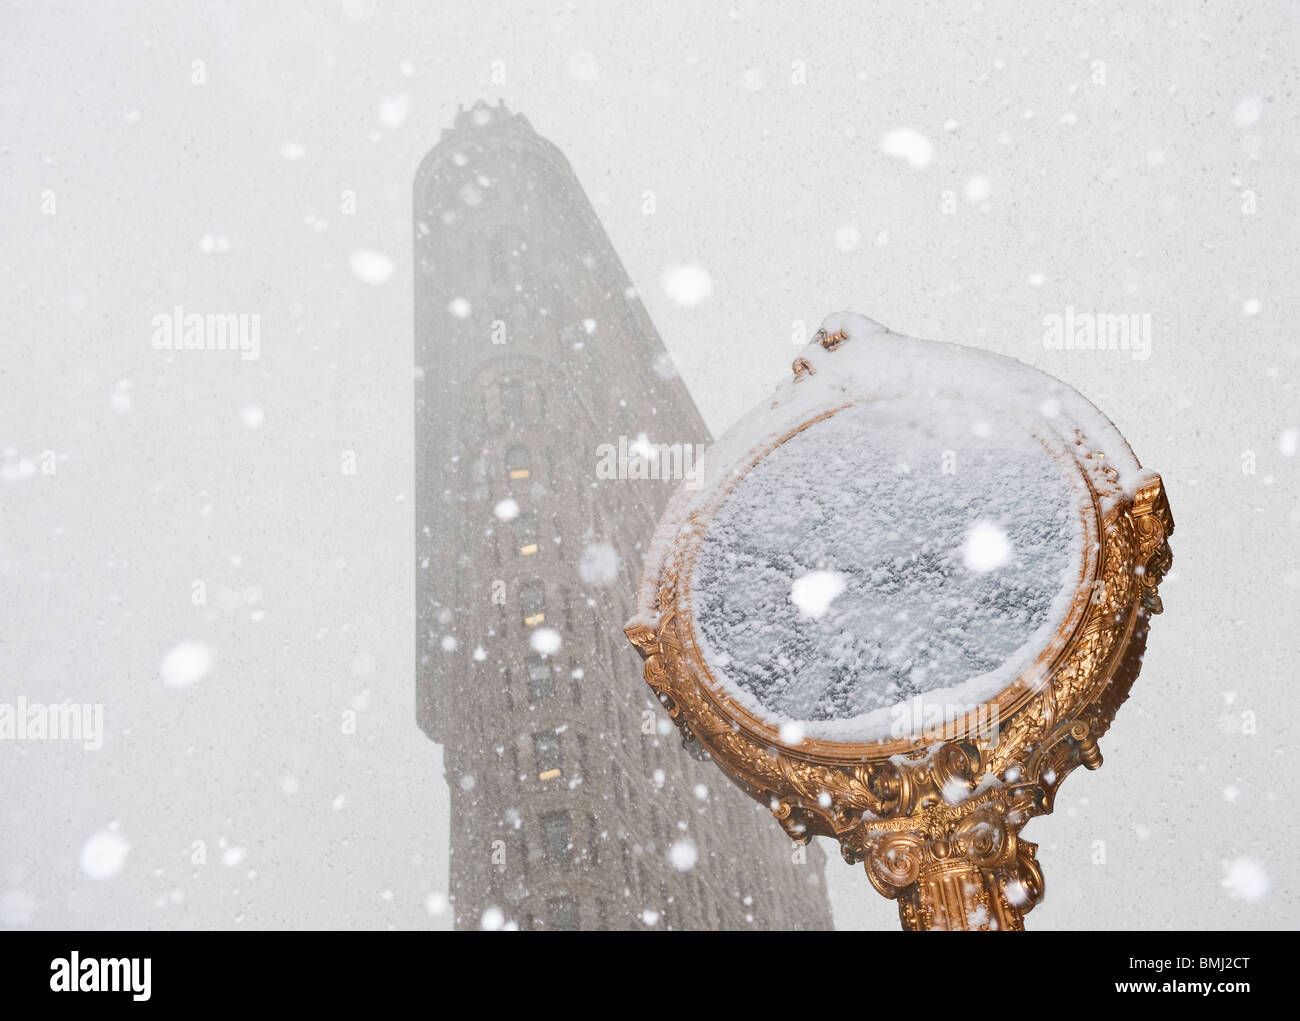 Giornata nevosa nel contesto urbano Foto Stock